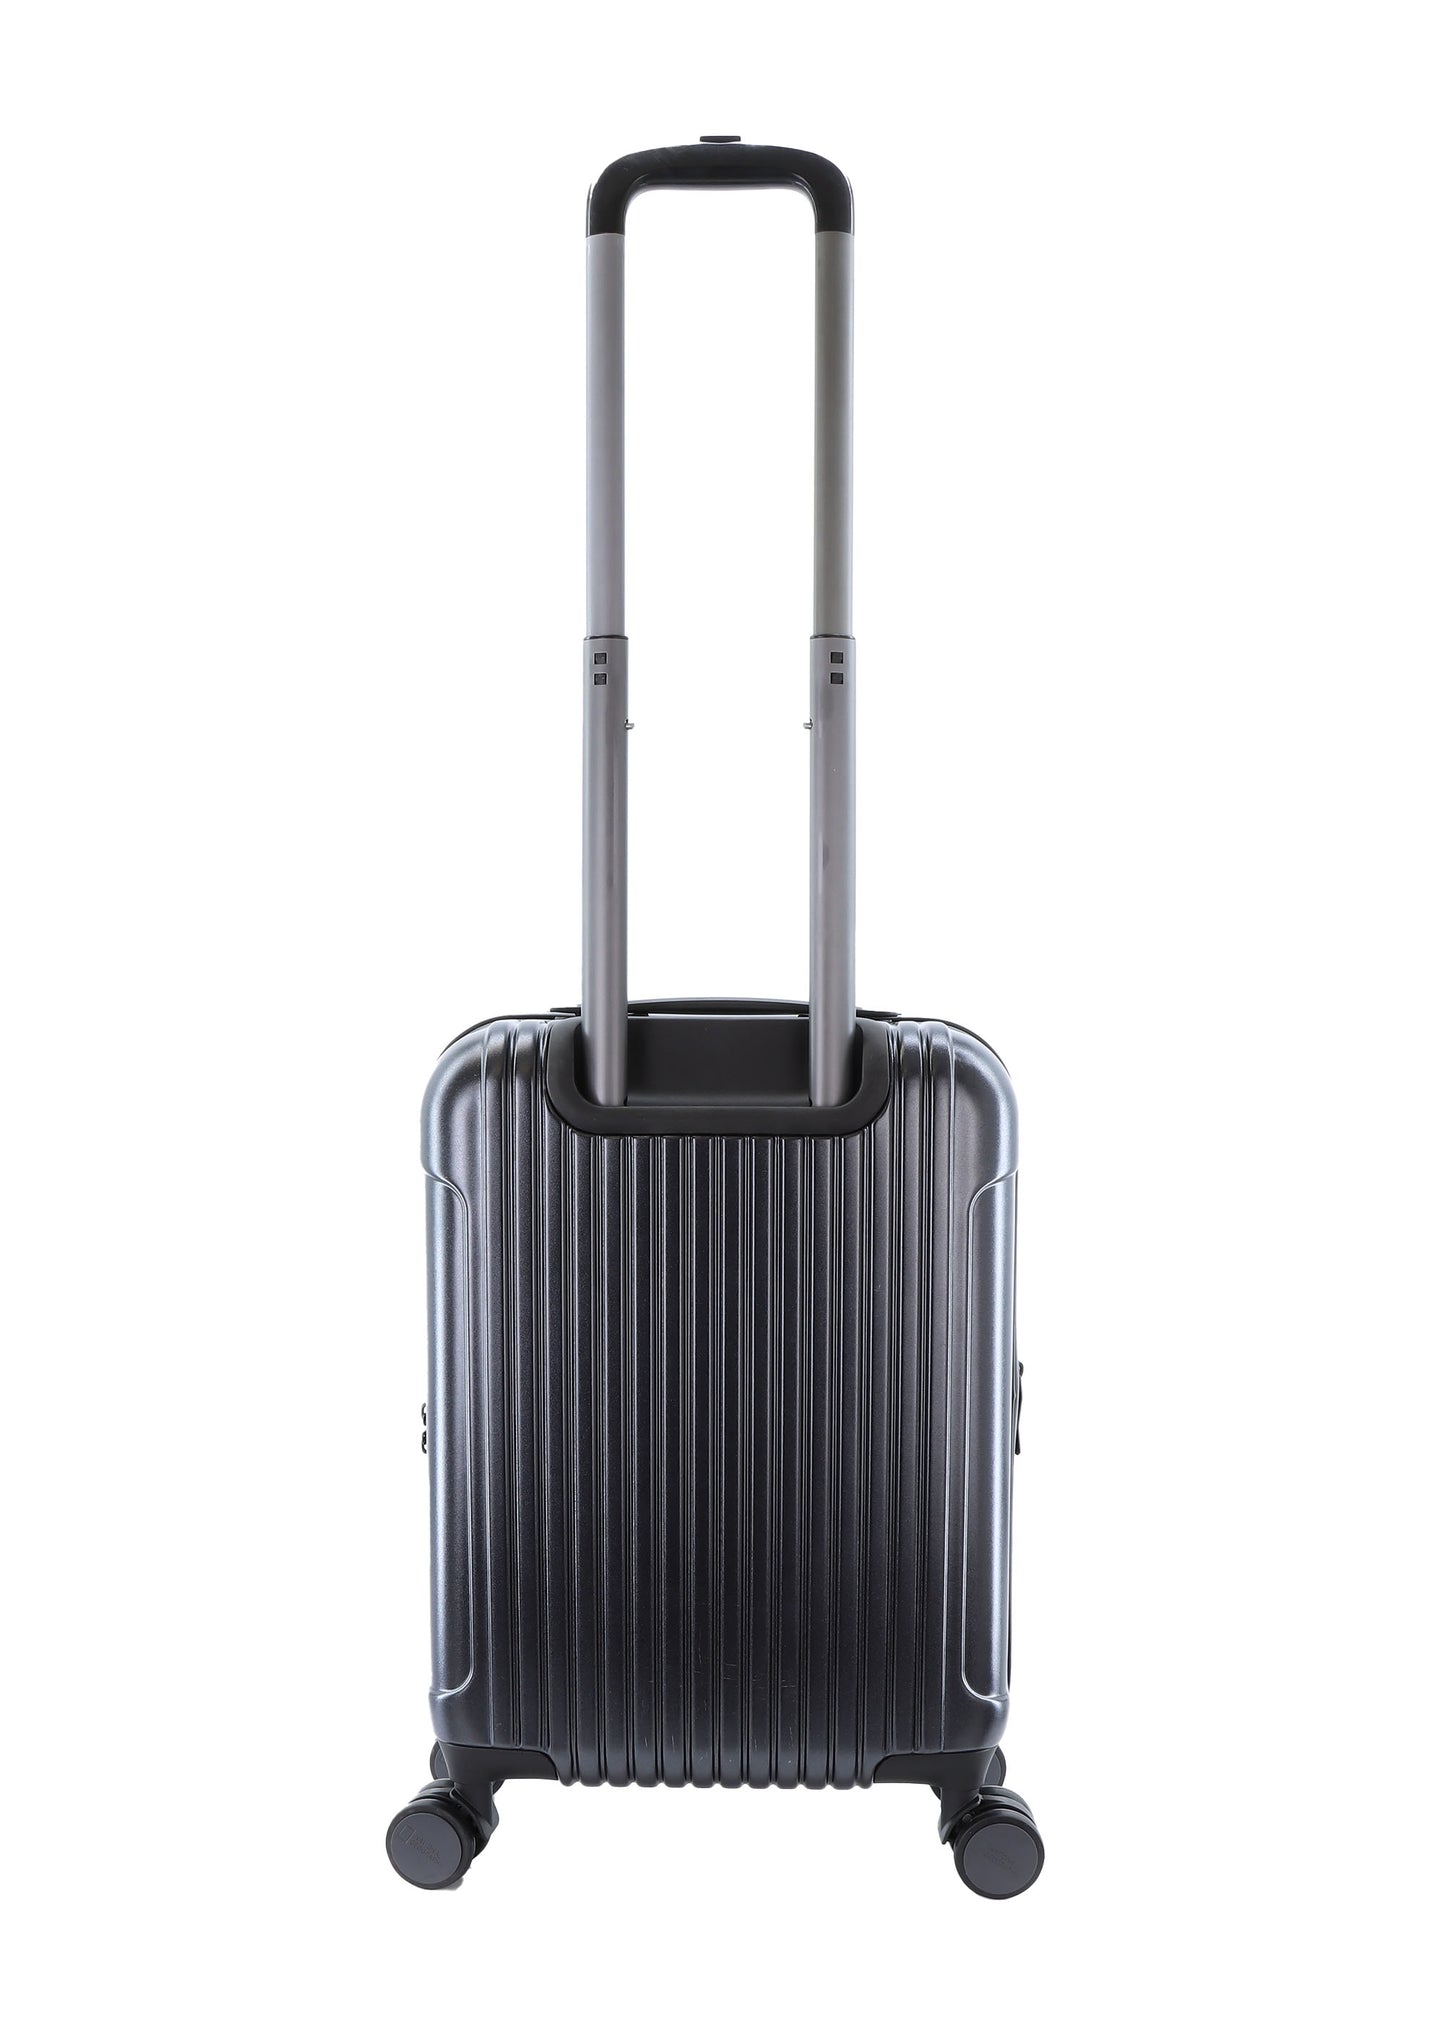 Valise rigide pour bagage à main National Geographic / Trolley / Valise de voyage - 55 cm (Petite) - Canyon - Noir